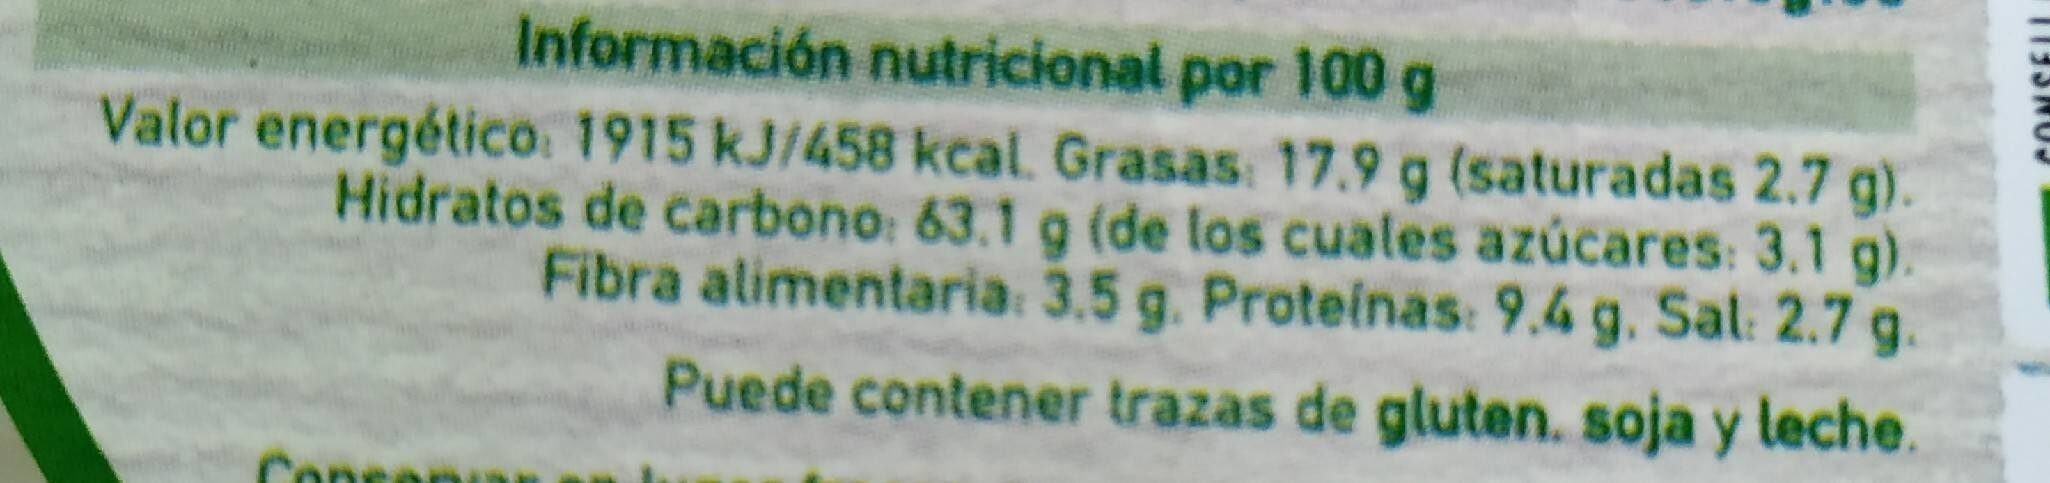 Rizos de Guisantes - Nutrition facts - es